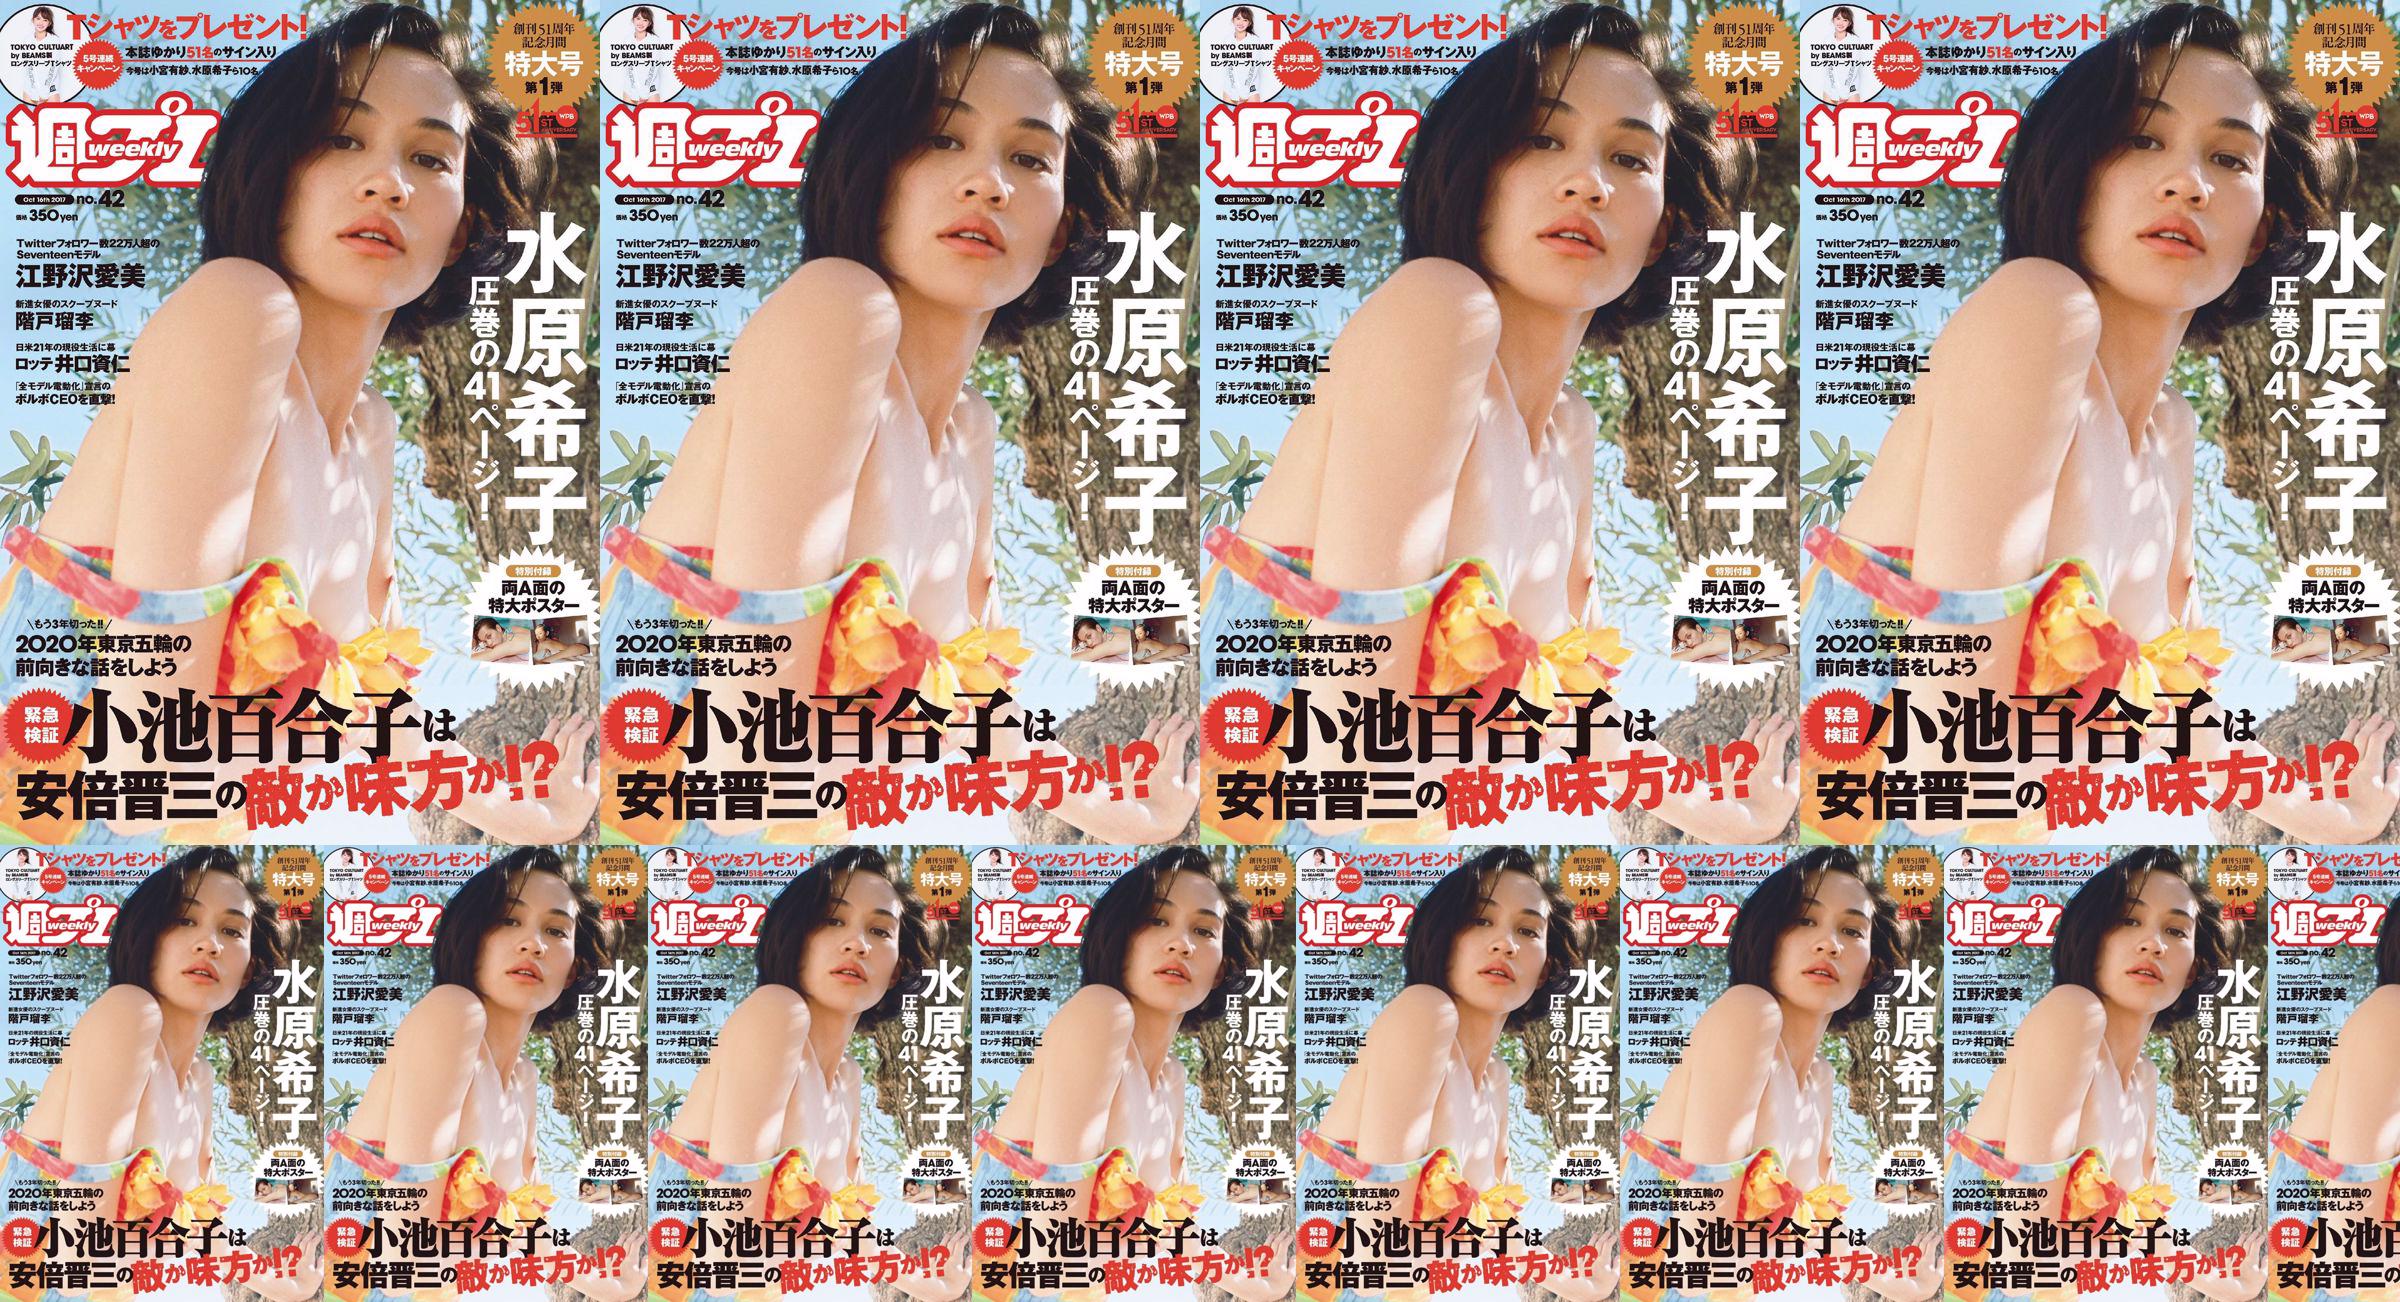 Kiko Mizuhara Manami Enosawa Serina Fukui Miu Nakamura Ruri Shinato [Wöchentlicher Playboy] 2017 Nr. 42 Fotomagazin No.830744 Seite 3